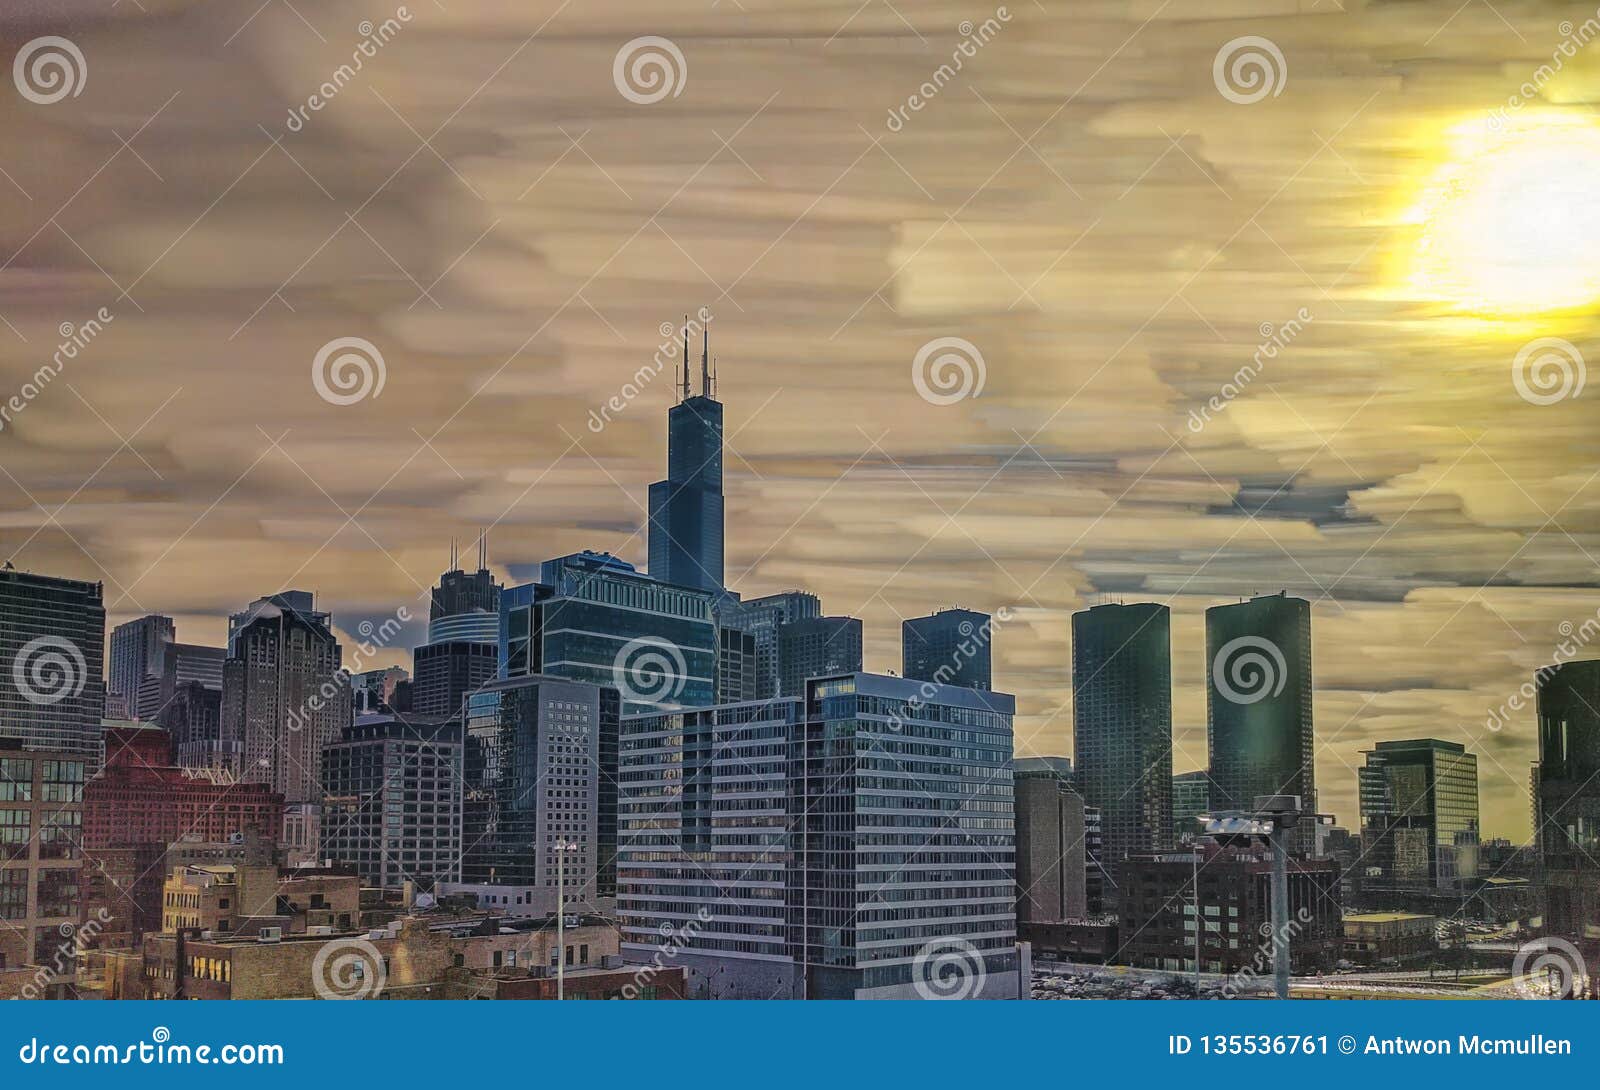 chicago loop skyline. west loop neighborhood with tallest tower landmark. long exposure with sun